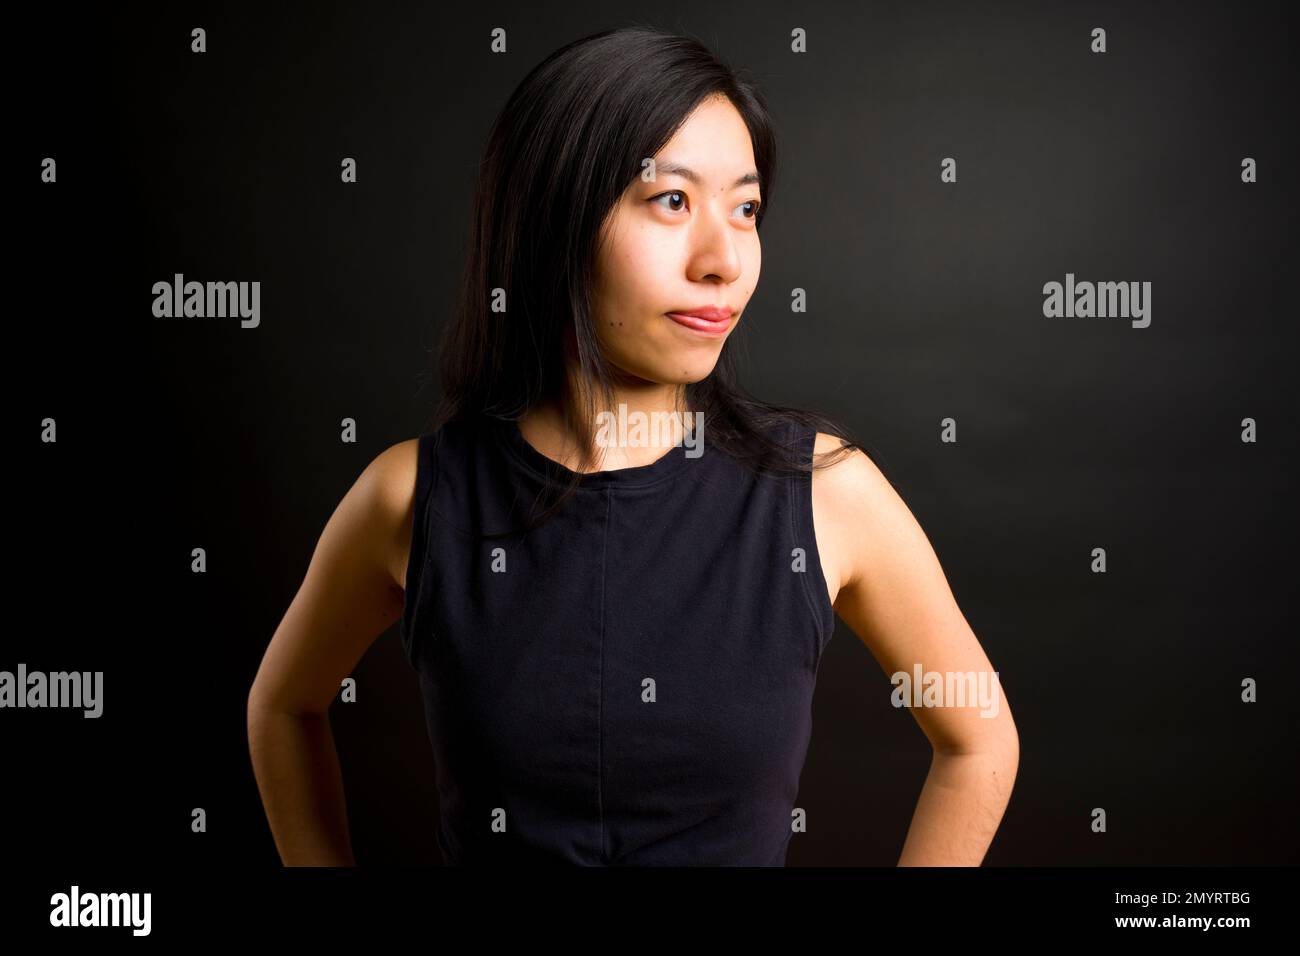 Profil der Athletic Young Asian Woman mit Händen an der Hüfte | Schwarzer Hintergrund | Trainingsbekleidung Stockfoto